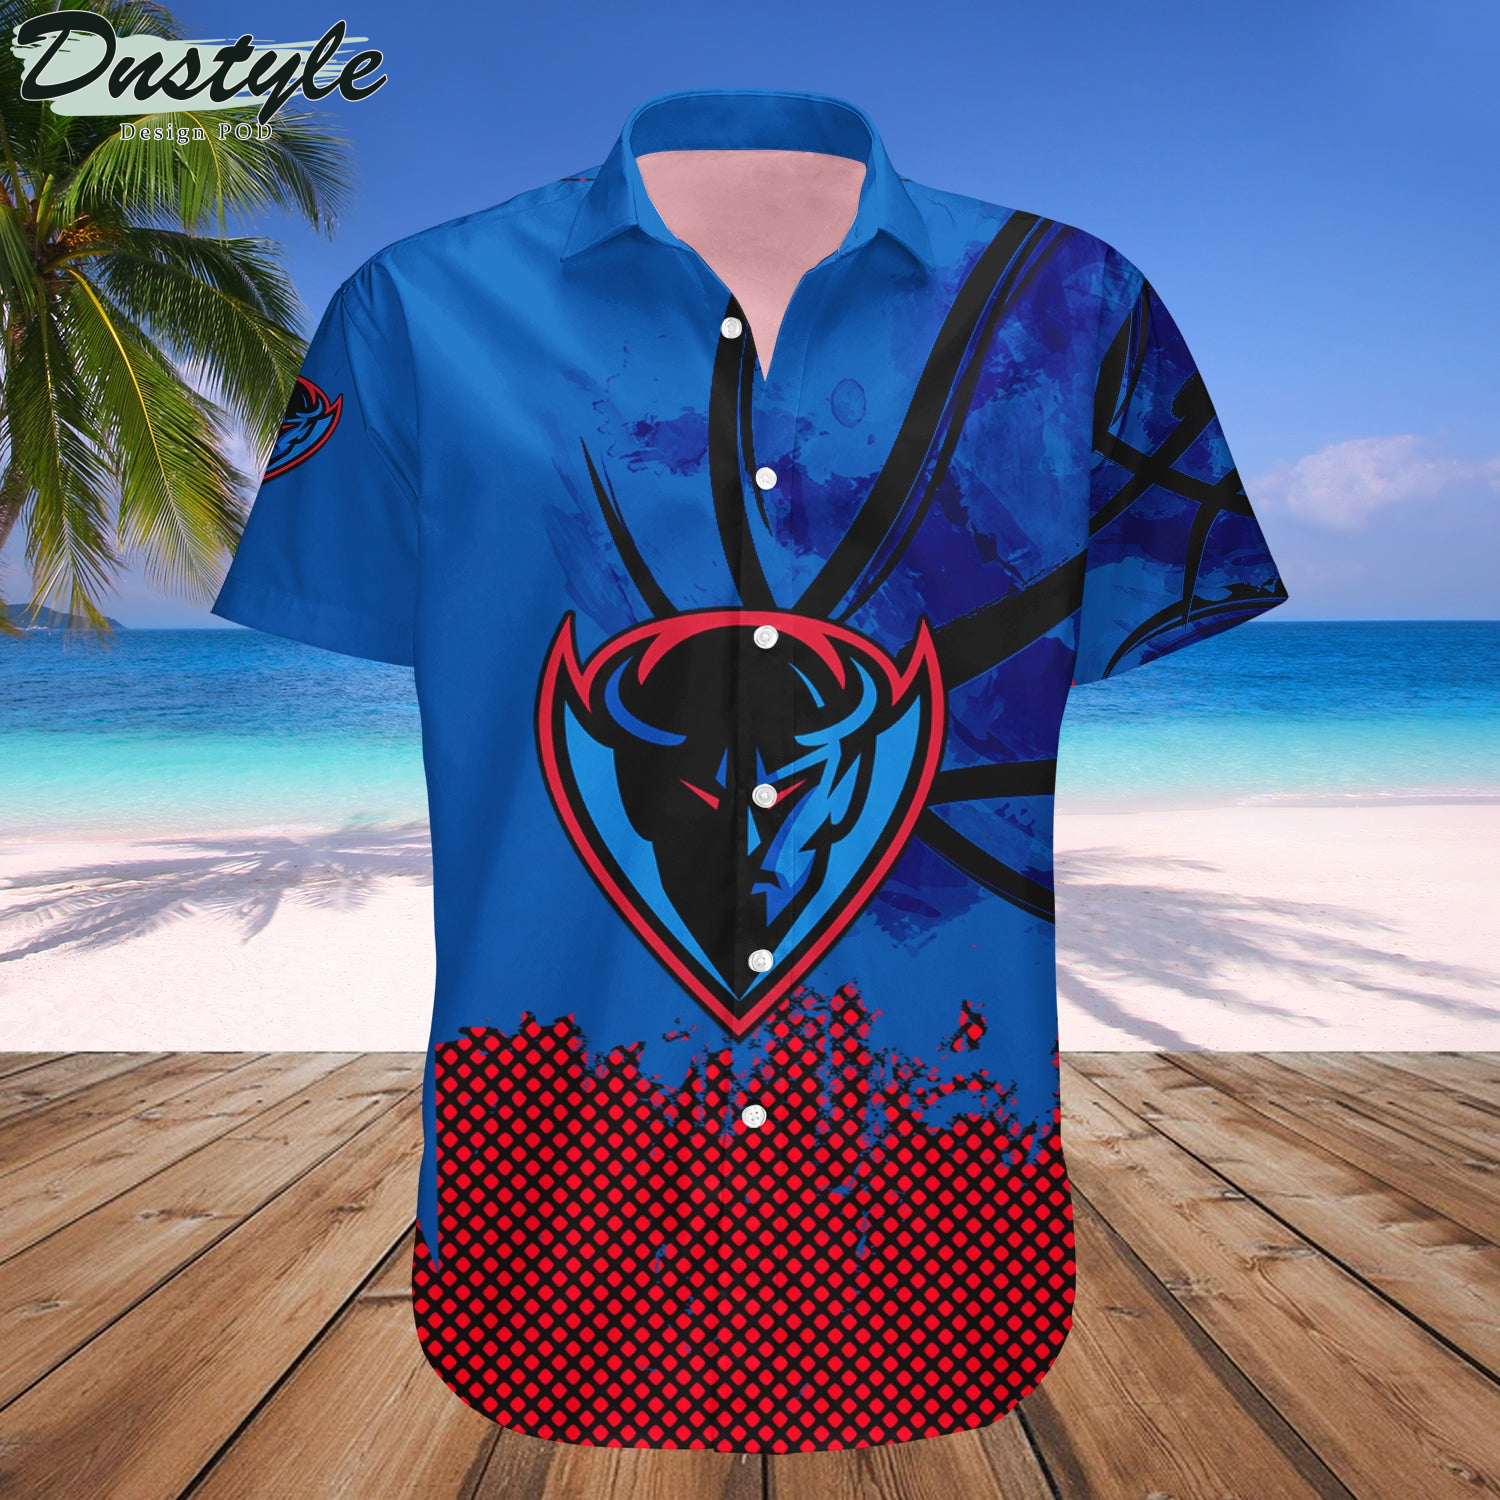 DePaul Blue Demons Basketball Net Grunge Pattern Hawaii Shirt